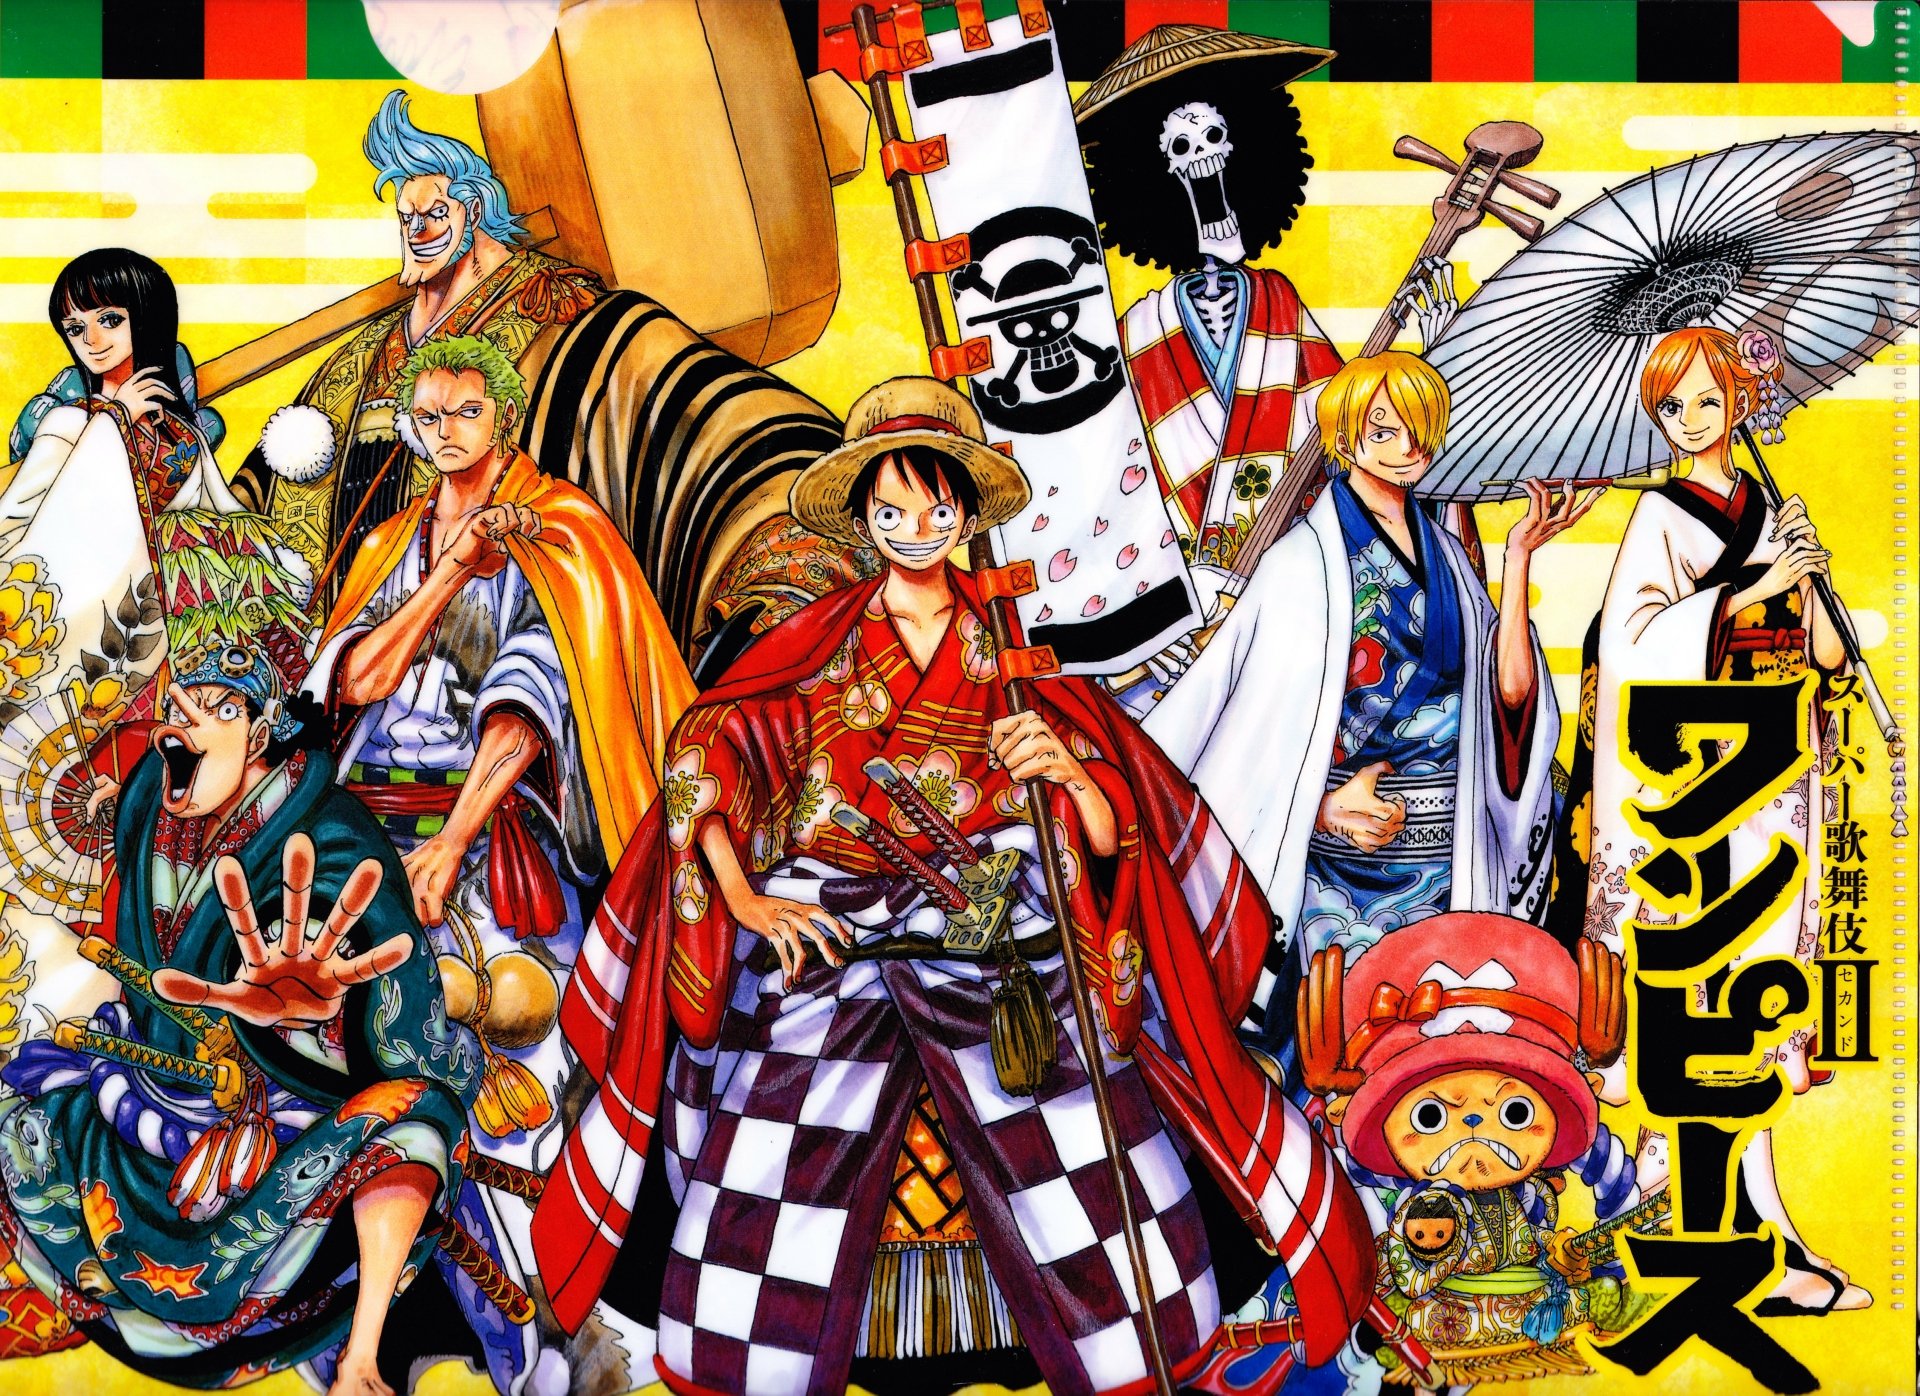 Straw Hat Pirates: Hãy khám phá bộ sưu tập ảnh về Straw Hat Pirates - nhóm phi hành đoàn huyền thoại của tác phẩm One Piece. Với đầy đủ thành viên, bạn hoàn toàn có thể thưởng thức những khoảnh khắc đáng nhớ của họ trên tàu Voi của họ. Đến với One Piece world và khám phá thế giới phiêu lưu bất tận!